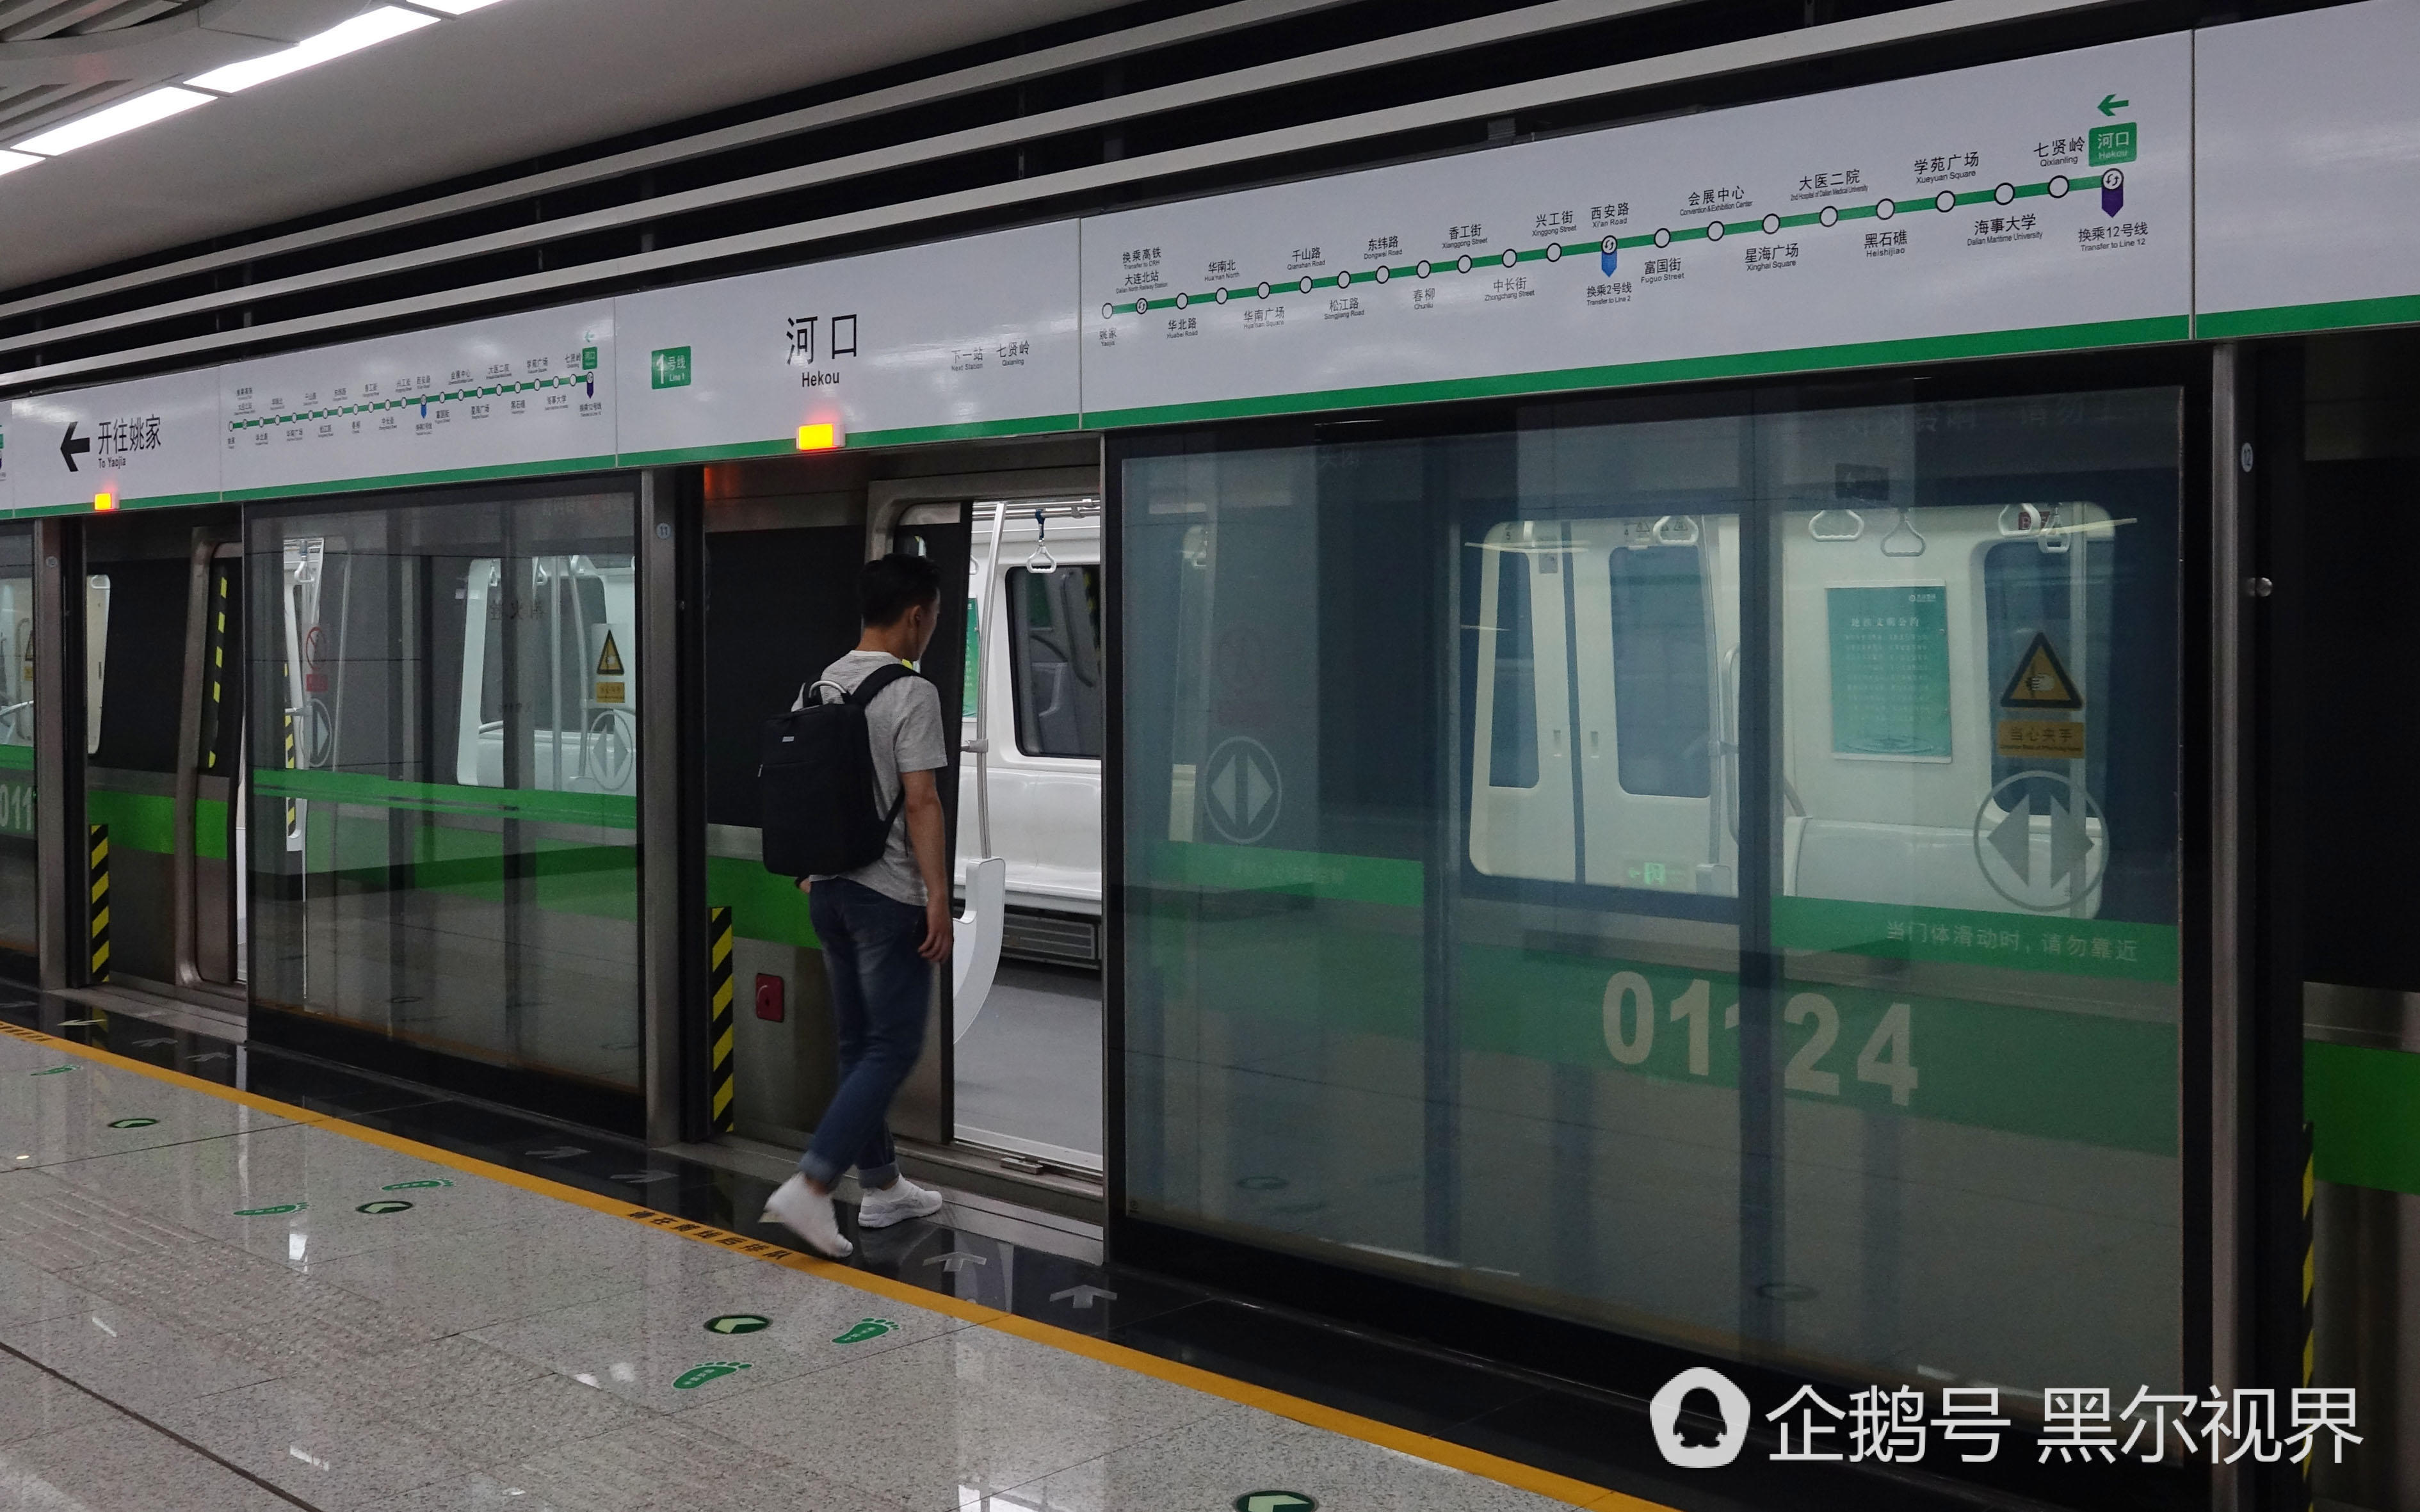 6月8日,大连地铁1号线河口站屏蔽窗新媒体播放大连风光片